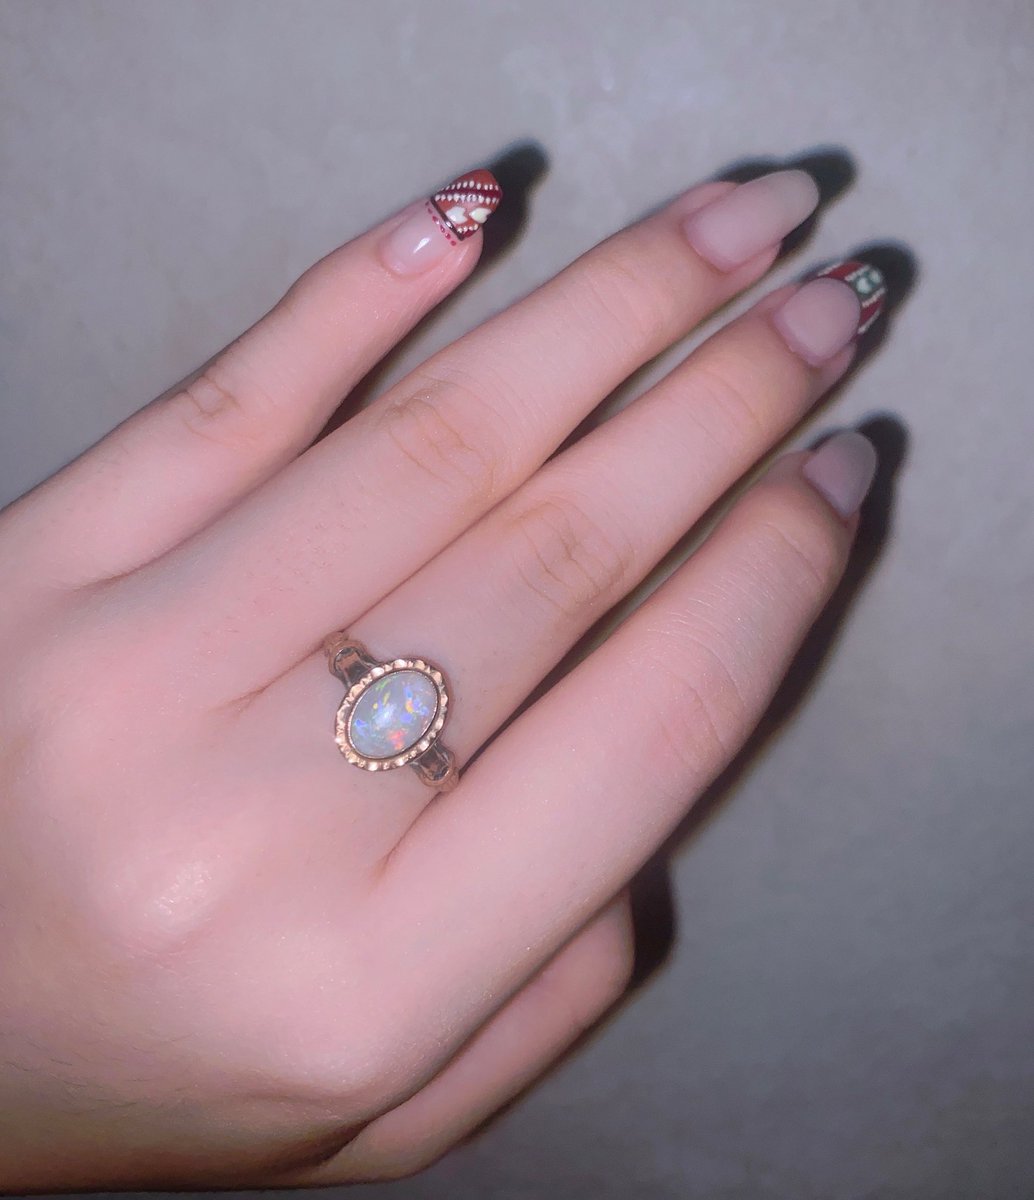 「祖母のオパールの婚約指輪、 ずっと可愛いなあ〜でもそんな大切なもの貰えないよなあ」|𝚃𝚊𝚛𝚘𝚕𝚘𝚝𝚝𝚊❤︎のイラスト